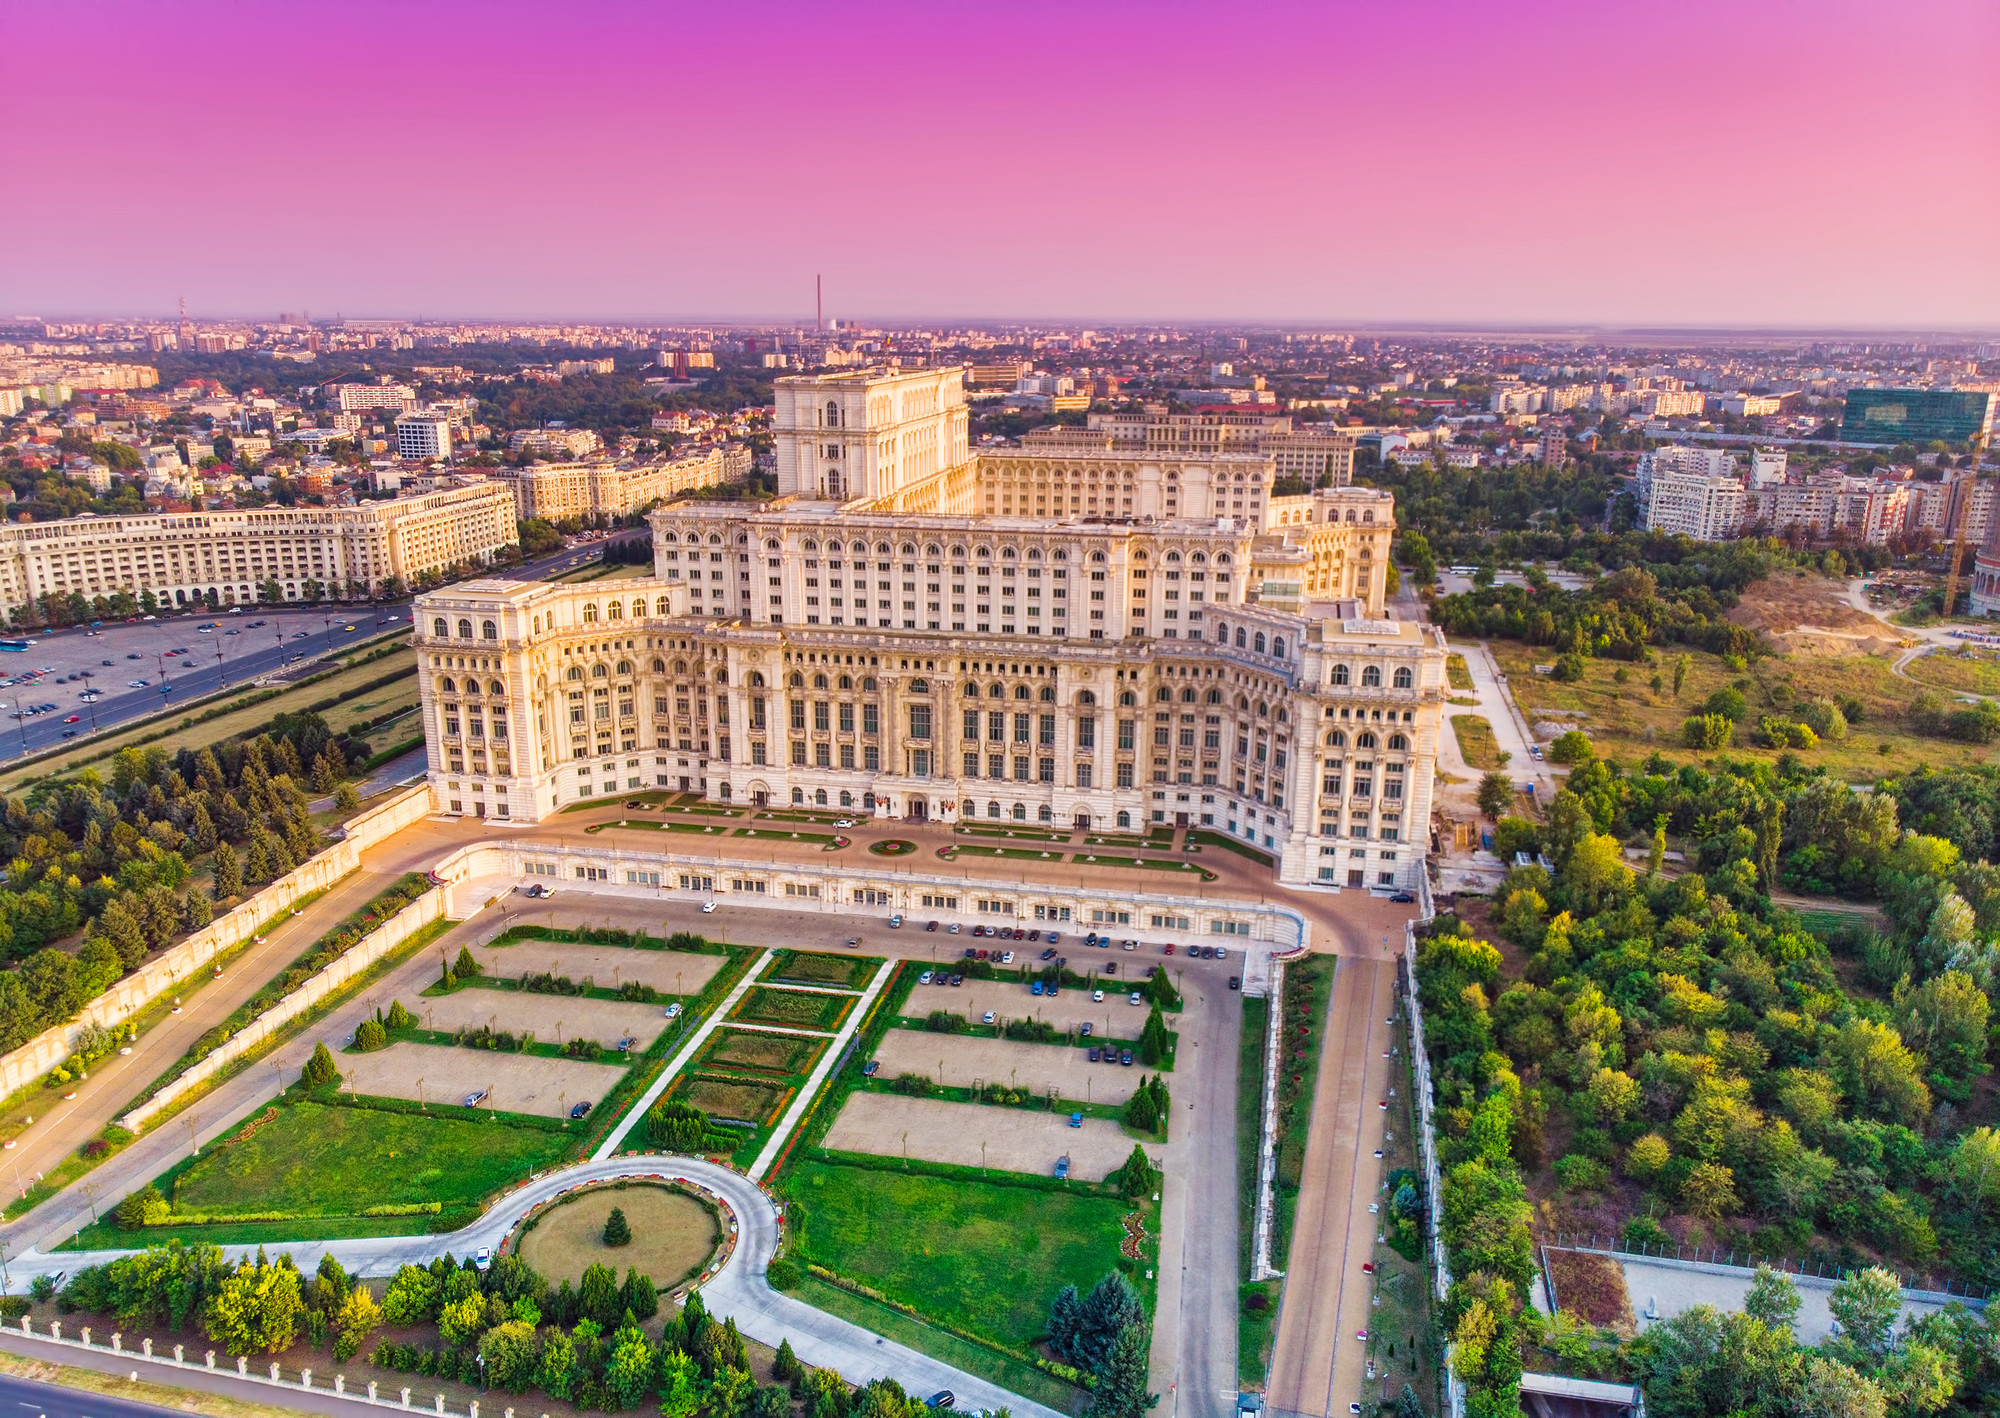 Clădiri simbol din București. Palatul Parlamentului